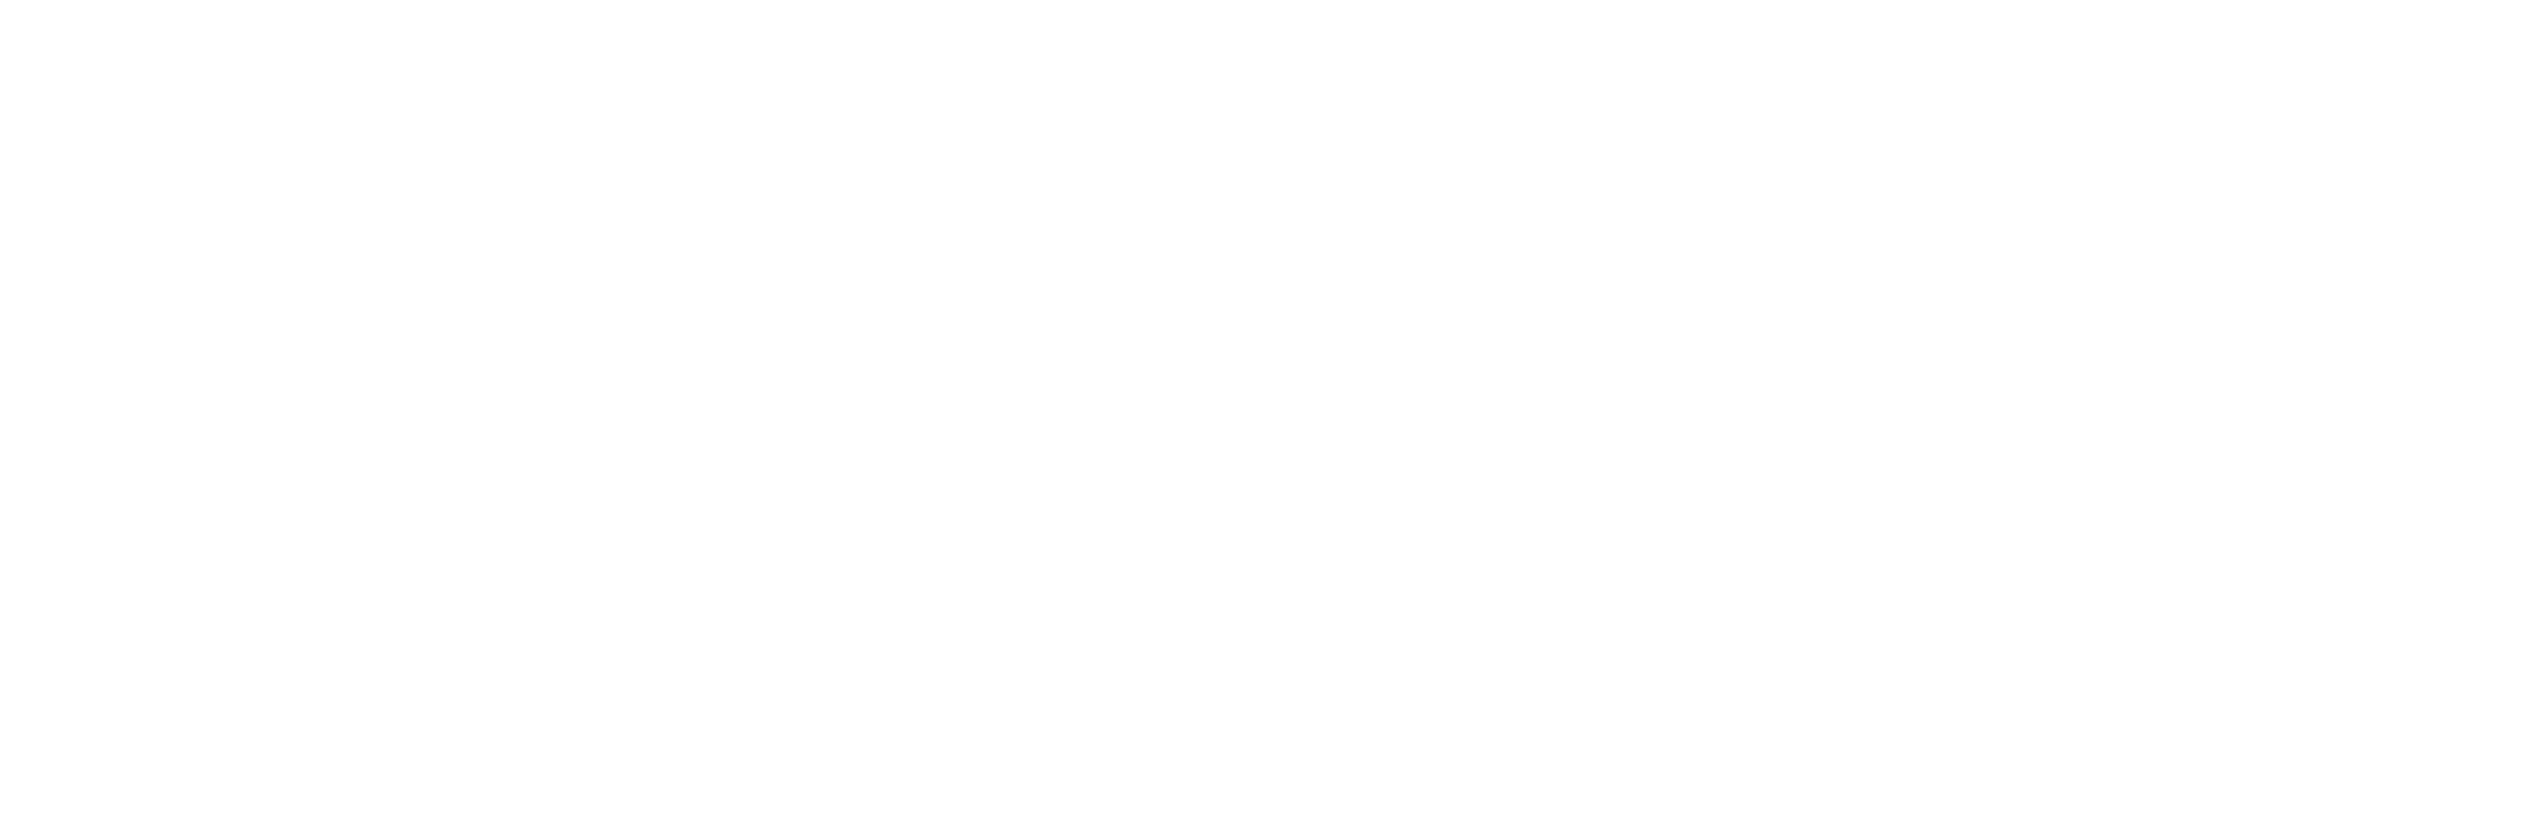 XAL Digital